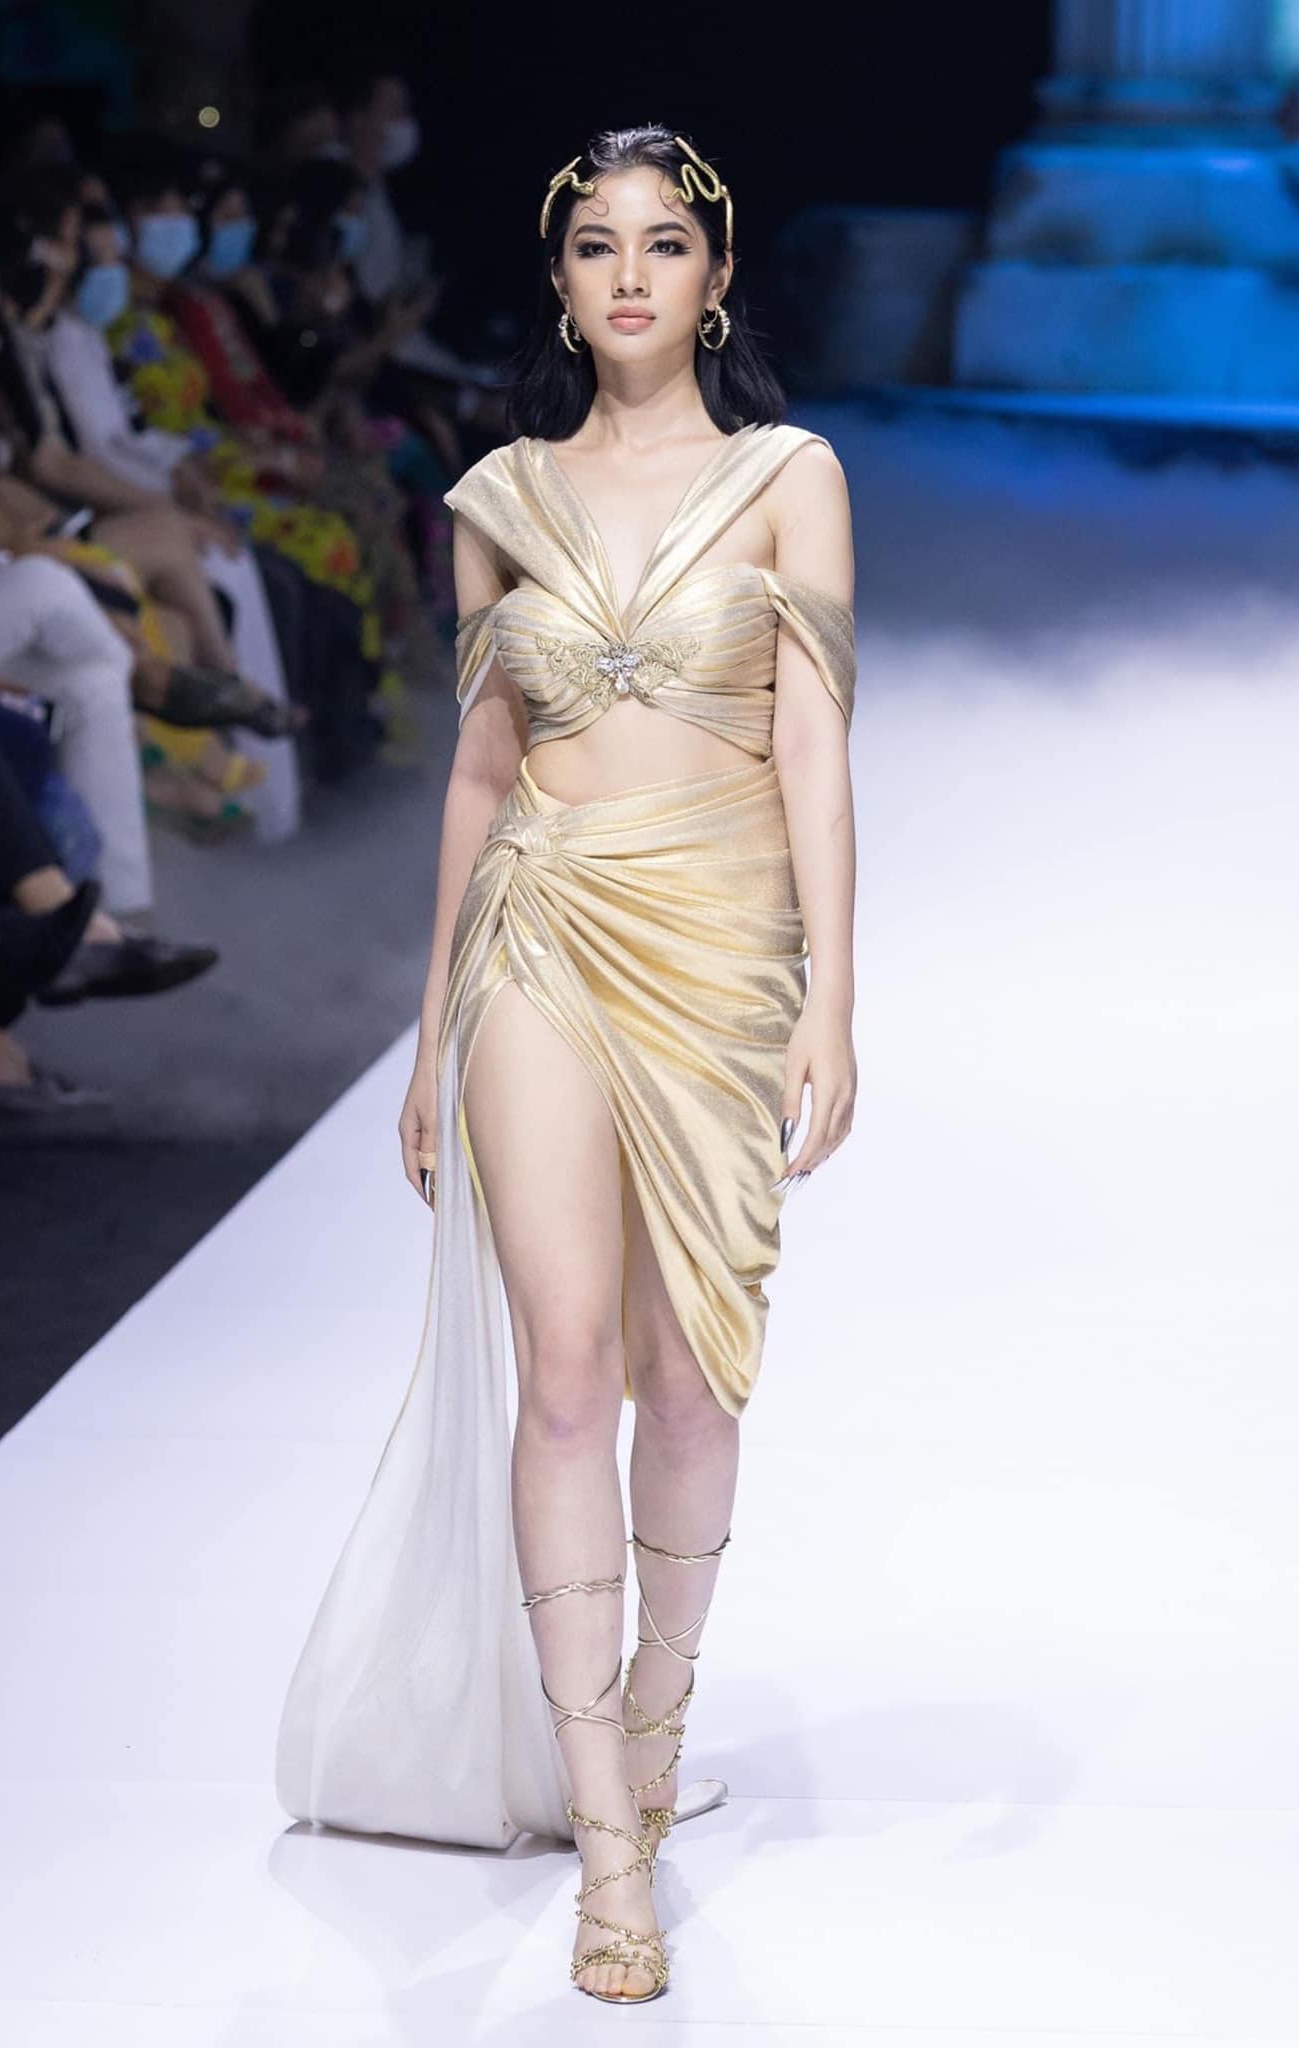 Cẩm Đan catwalk trong show của NTK Đỗ Long tại Tuần lễ thời trang quốc tế Việt Nam 2020.